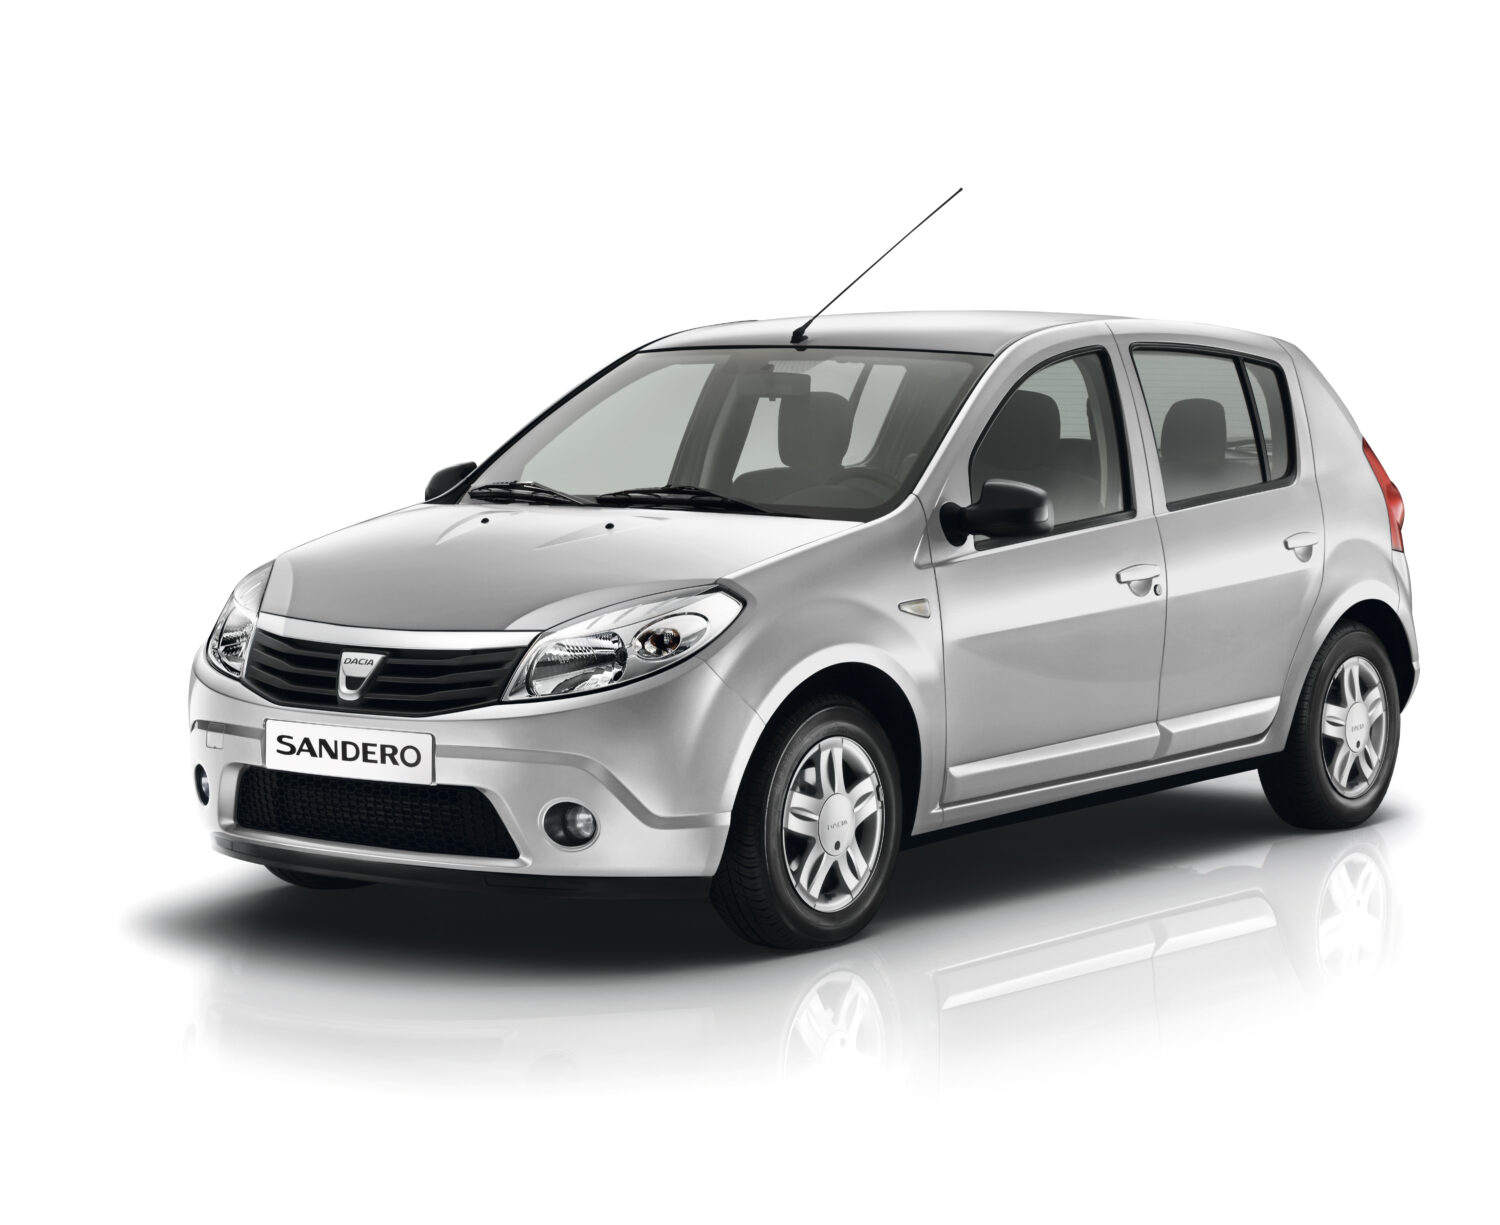 2008 - Dacia SANDERO.jpg